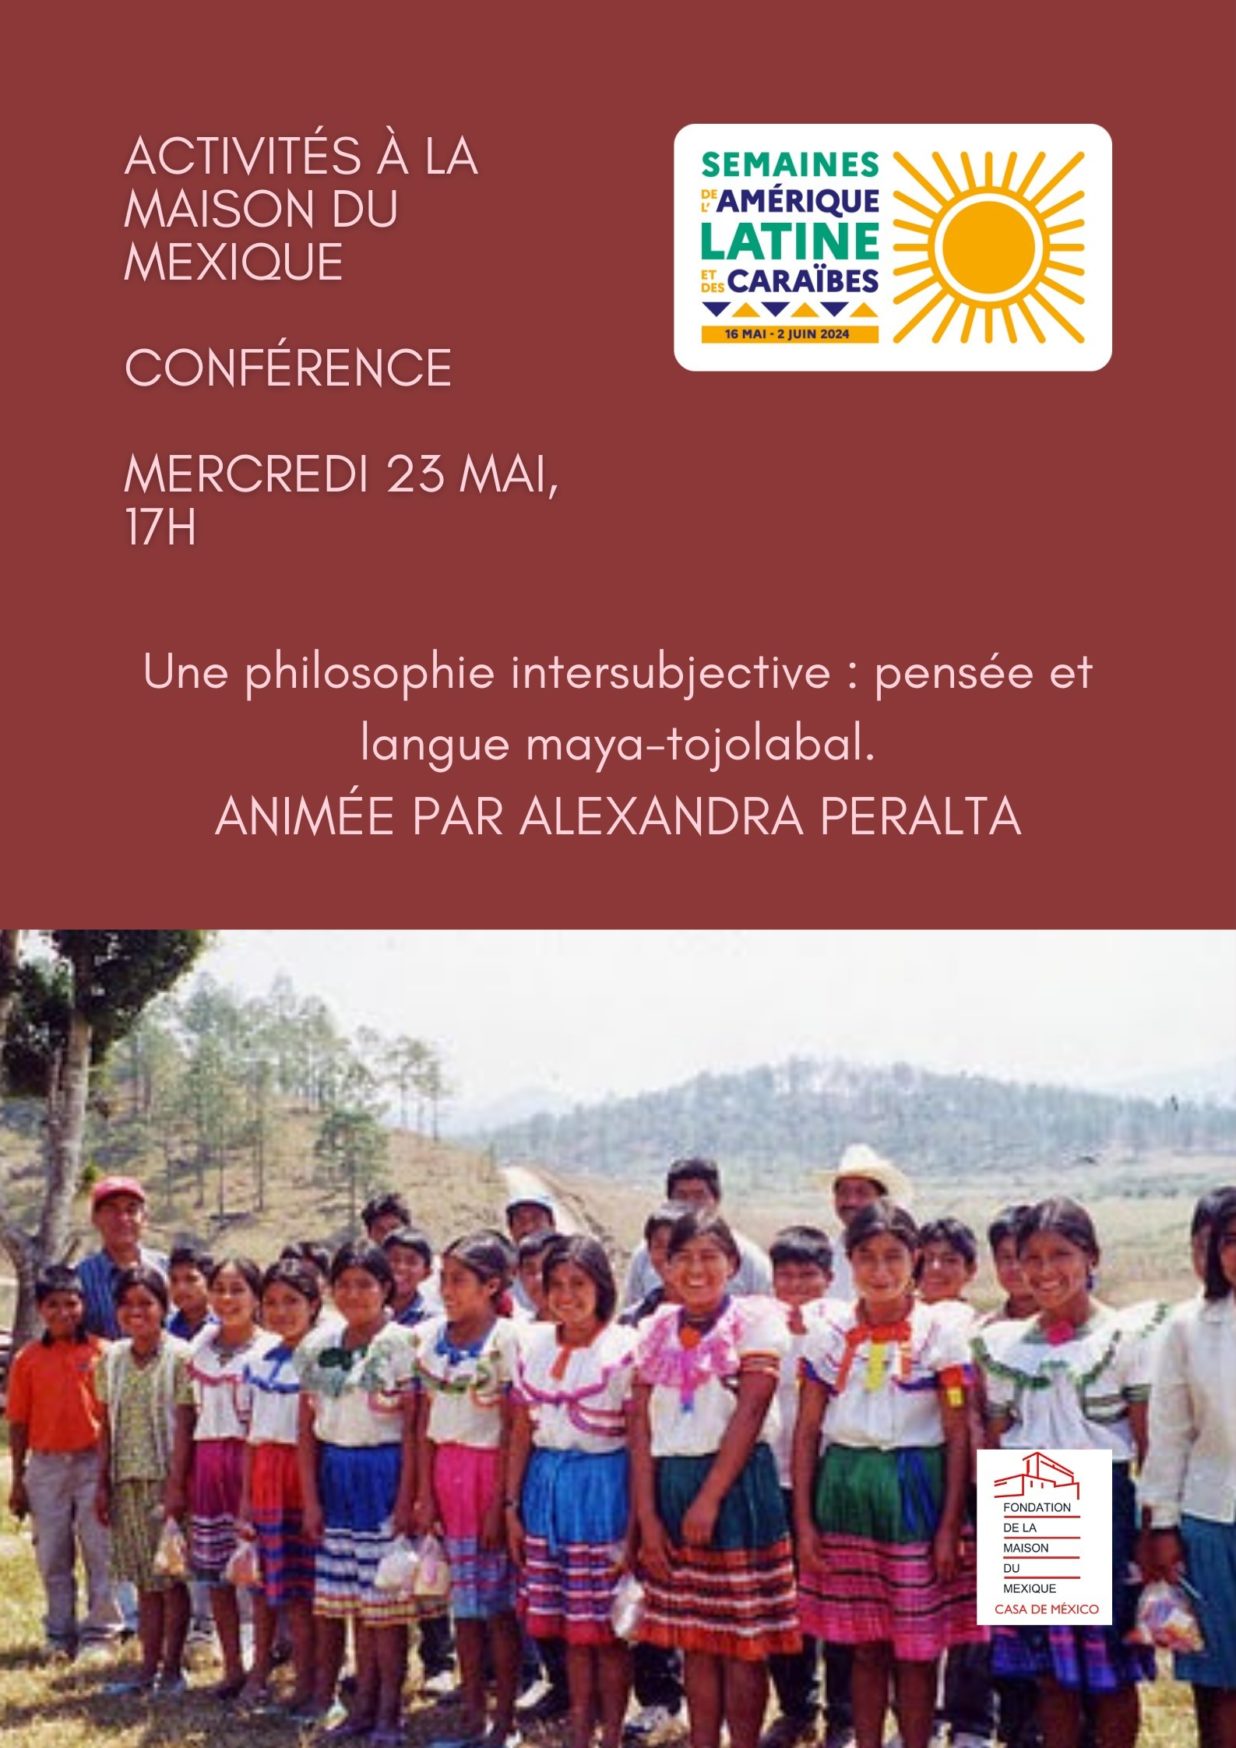 23 mai PERALTA conference